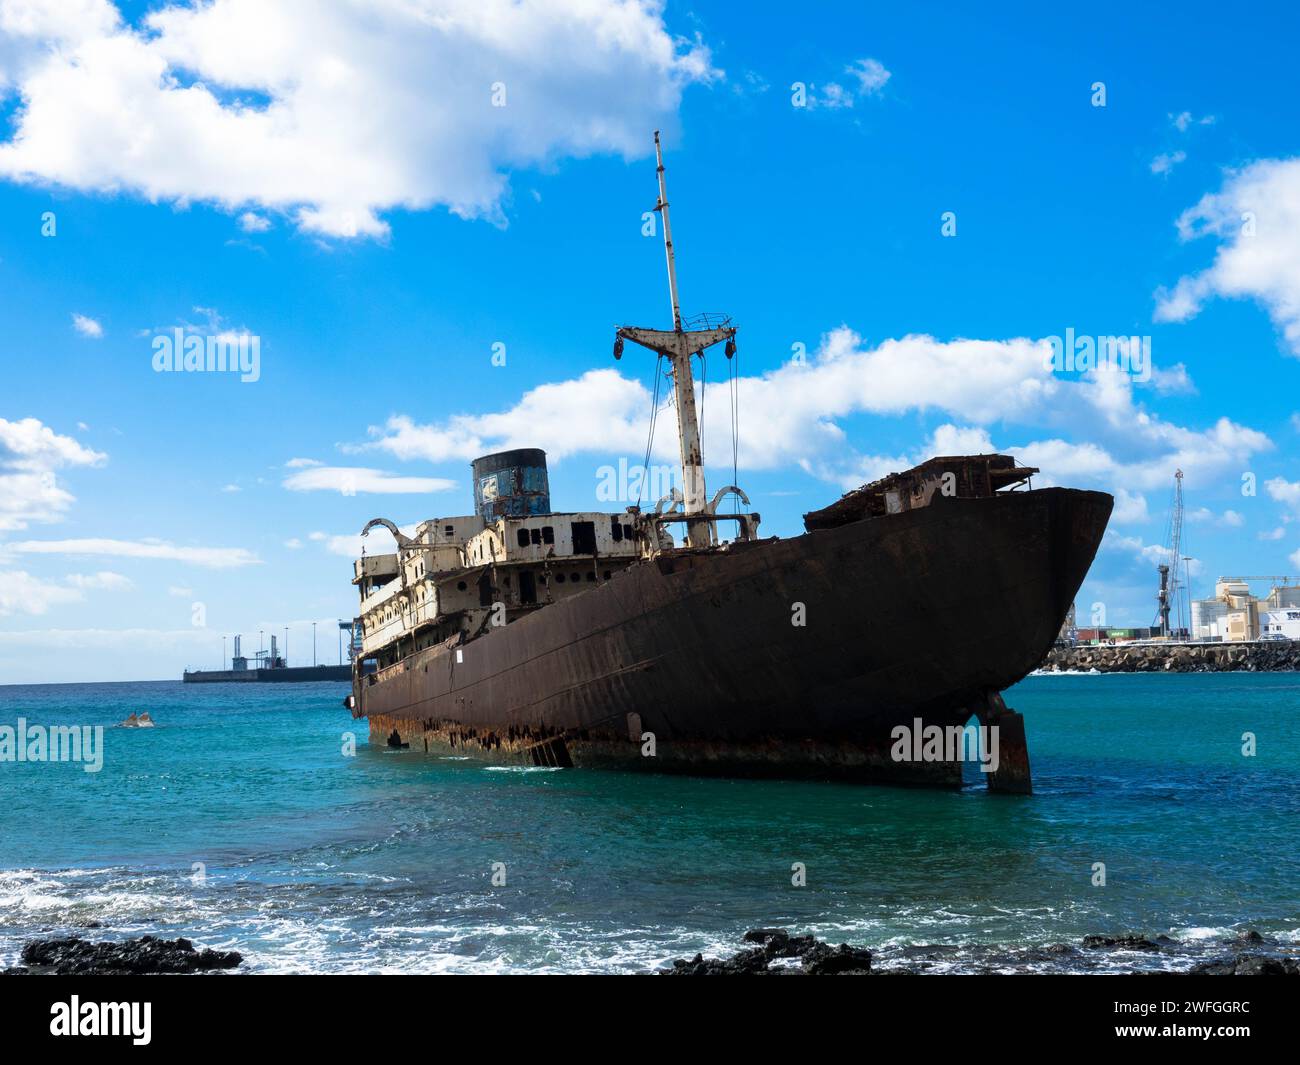 Verlorener Ort. Schiffswrack namens Tempelhalle oder Telamon in einer Bucht in der Nähe des Industriehafens Arrecifes auf den Kanarischen Inseln Lanzarote. Ökologische Katastrophe. Stockfoto